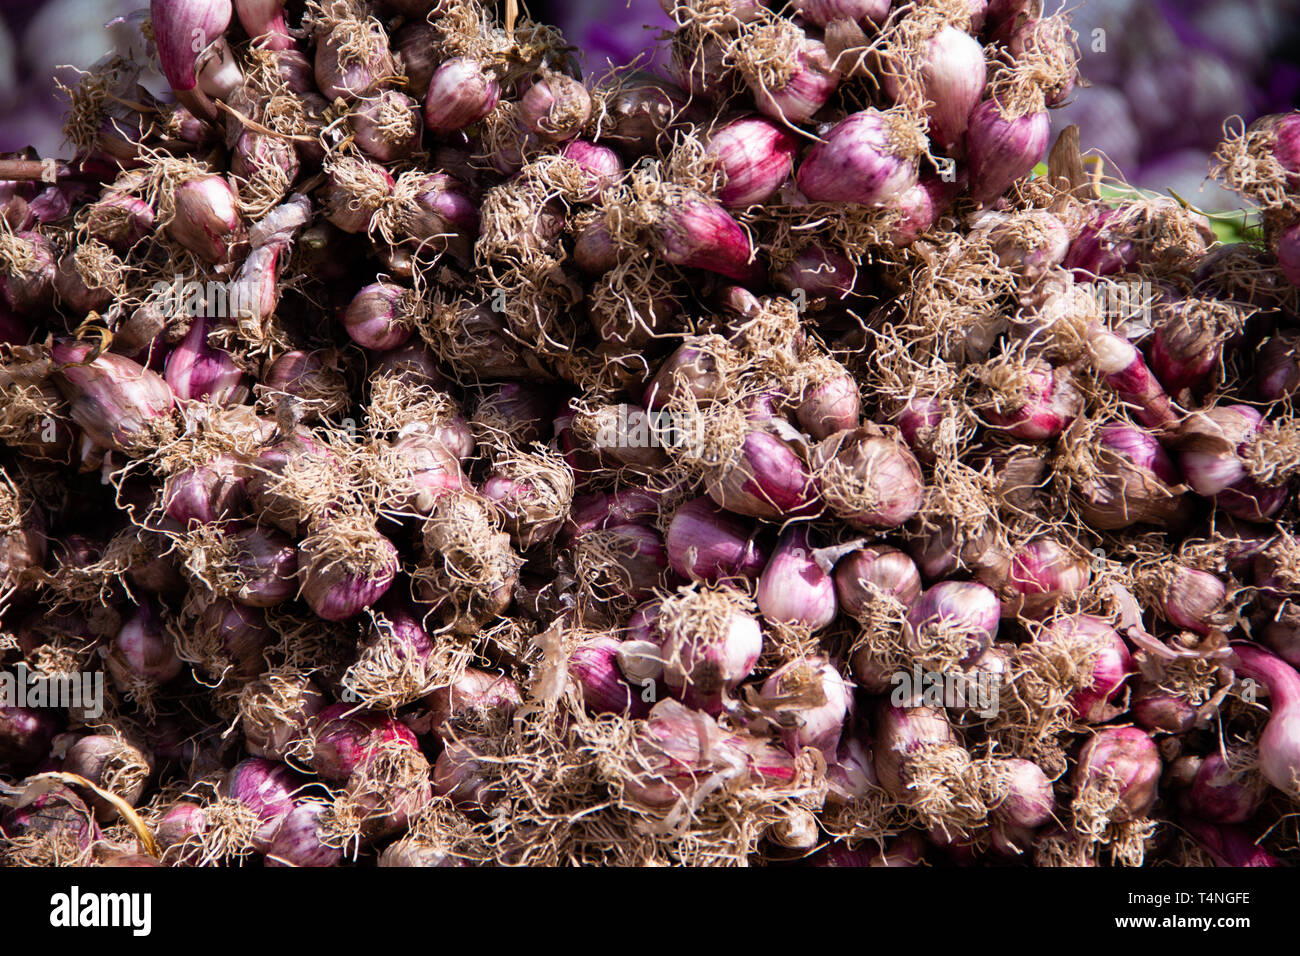 Un fascio di aglio fresco capi sdraiato su un vendor' stand Foto Stock